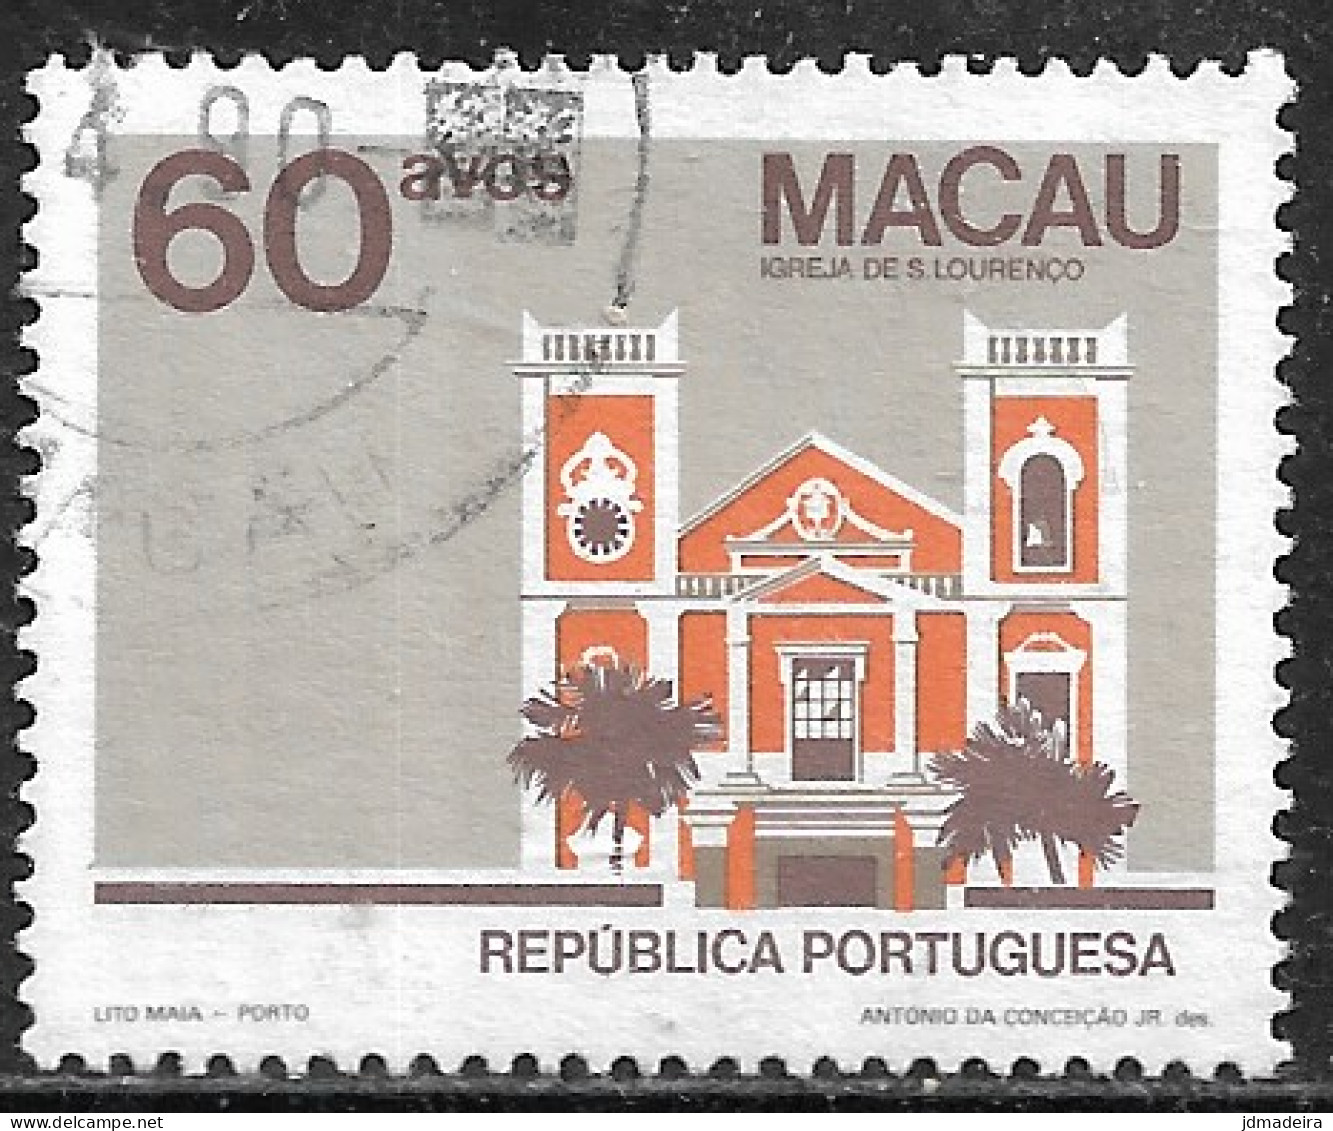 Macau Macao – 1984 Public Buildings 60 Avos No Year Scarce Variety Used Stamp - Gebruikt